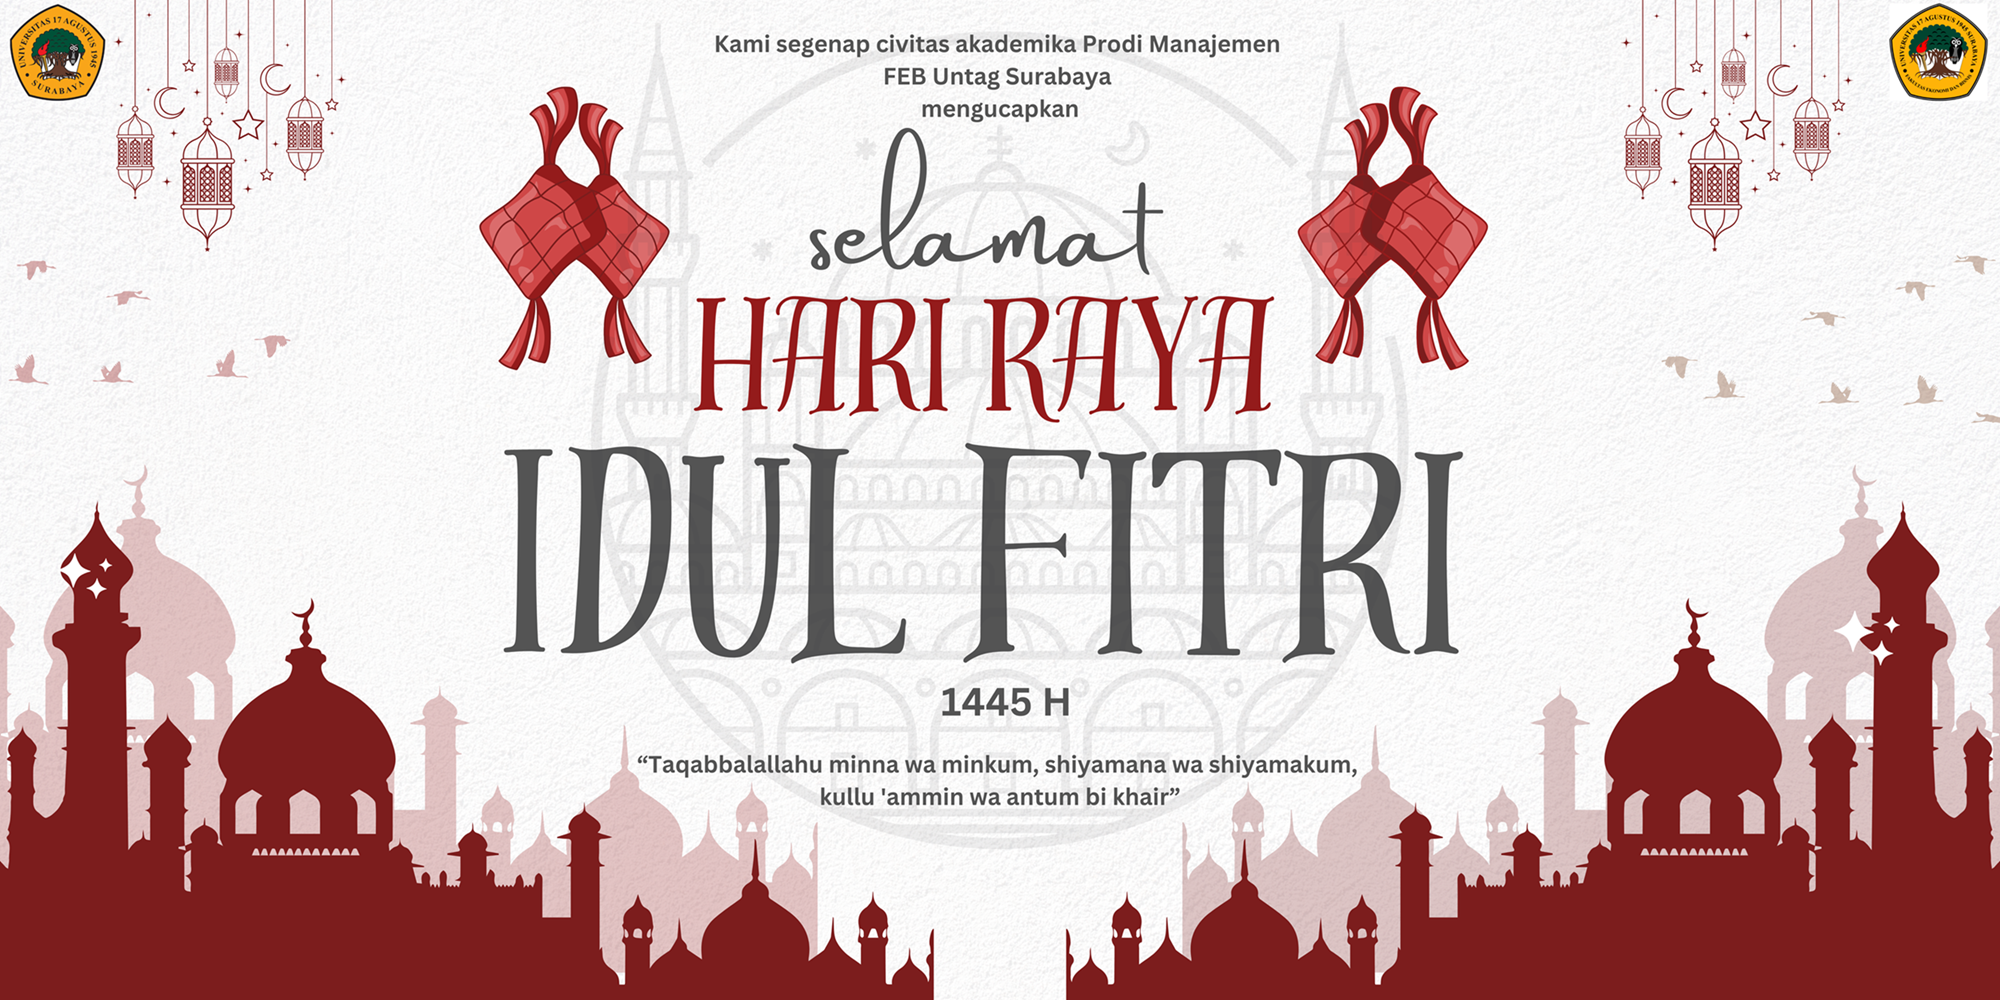 Idul Fitri 1445 H